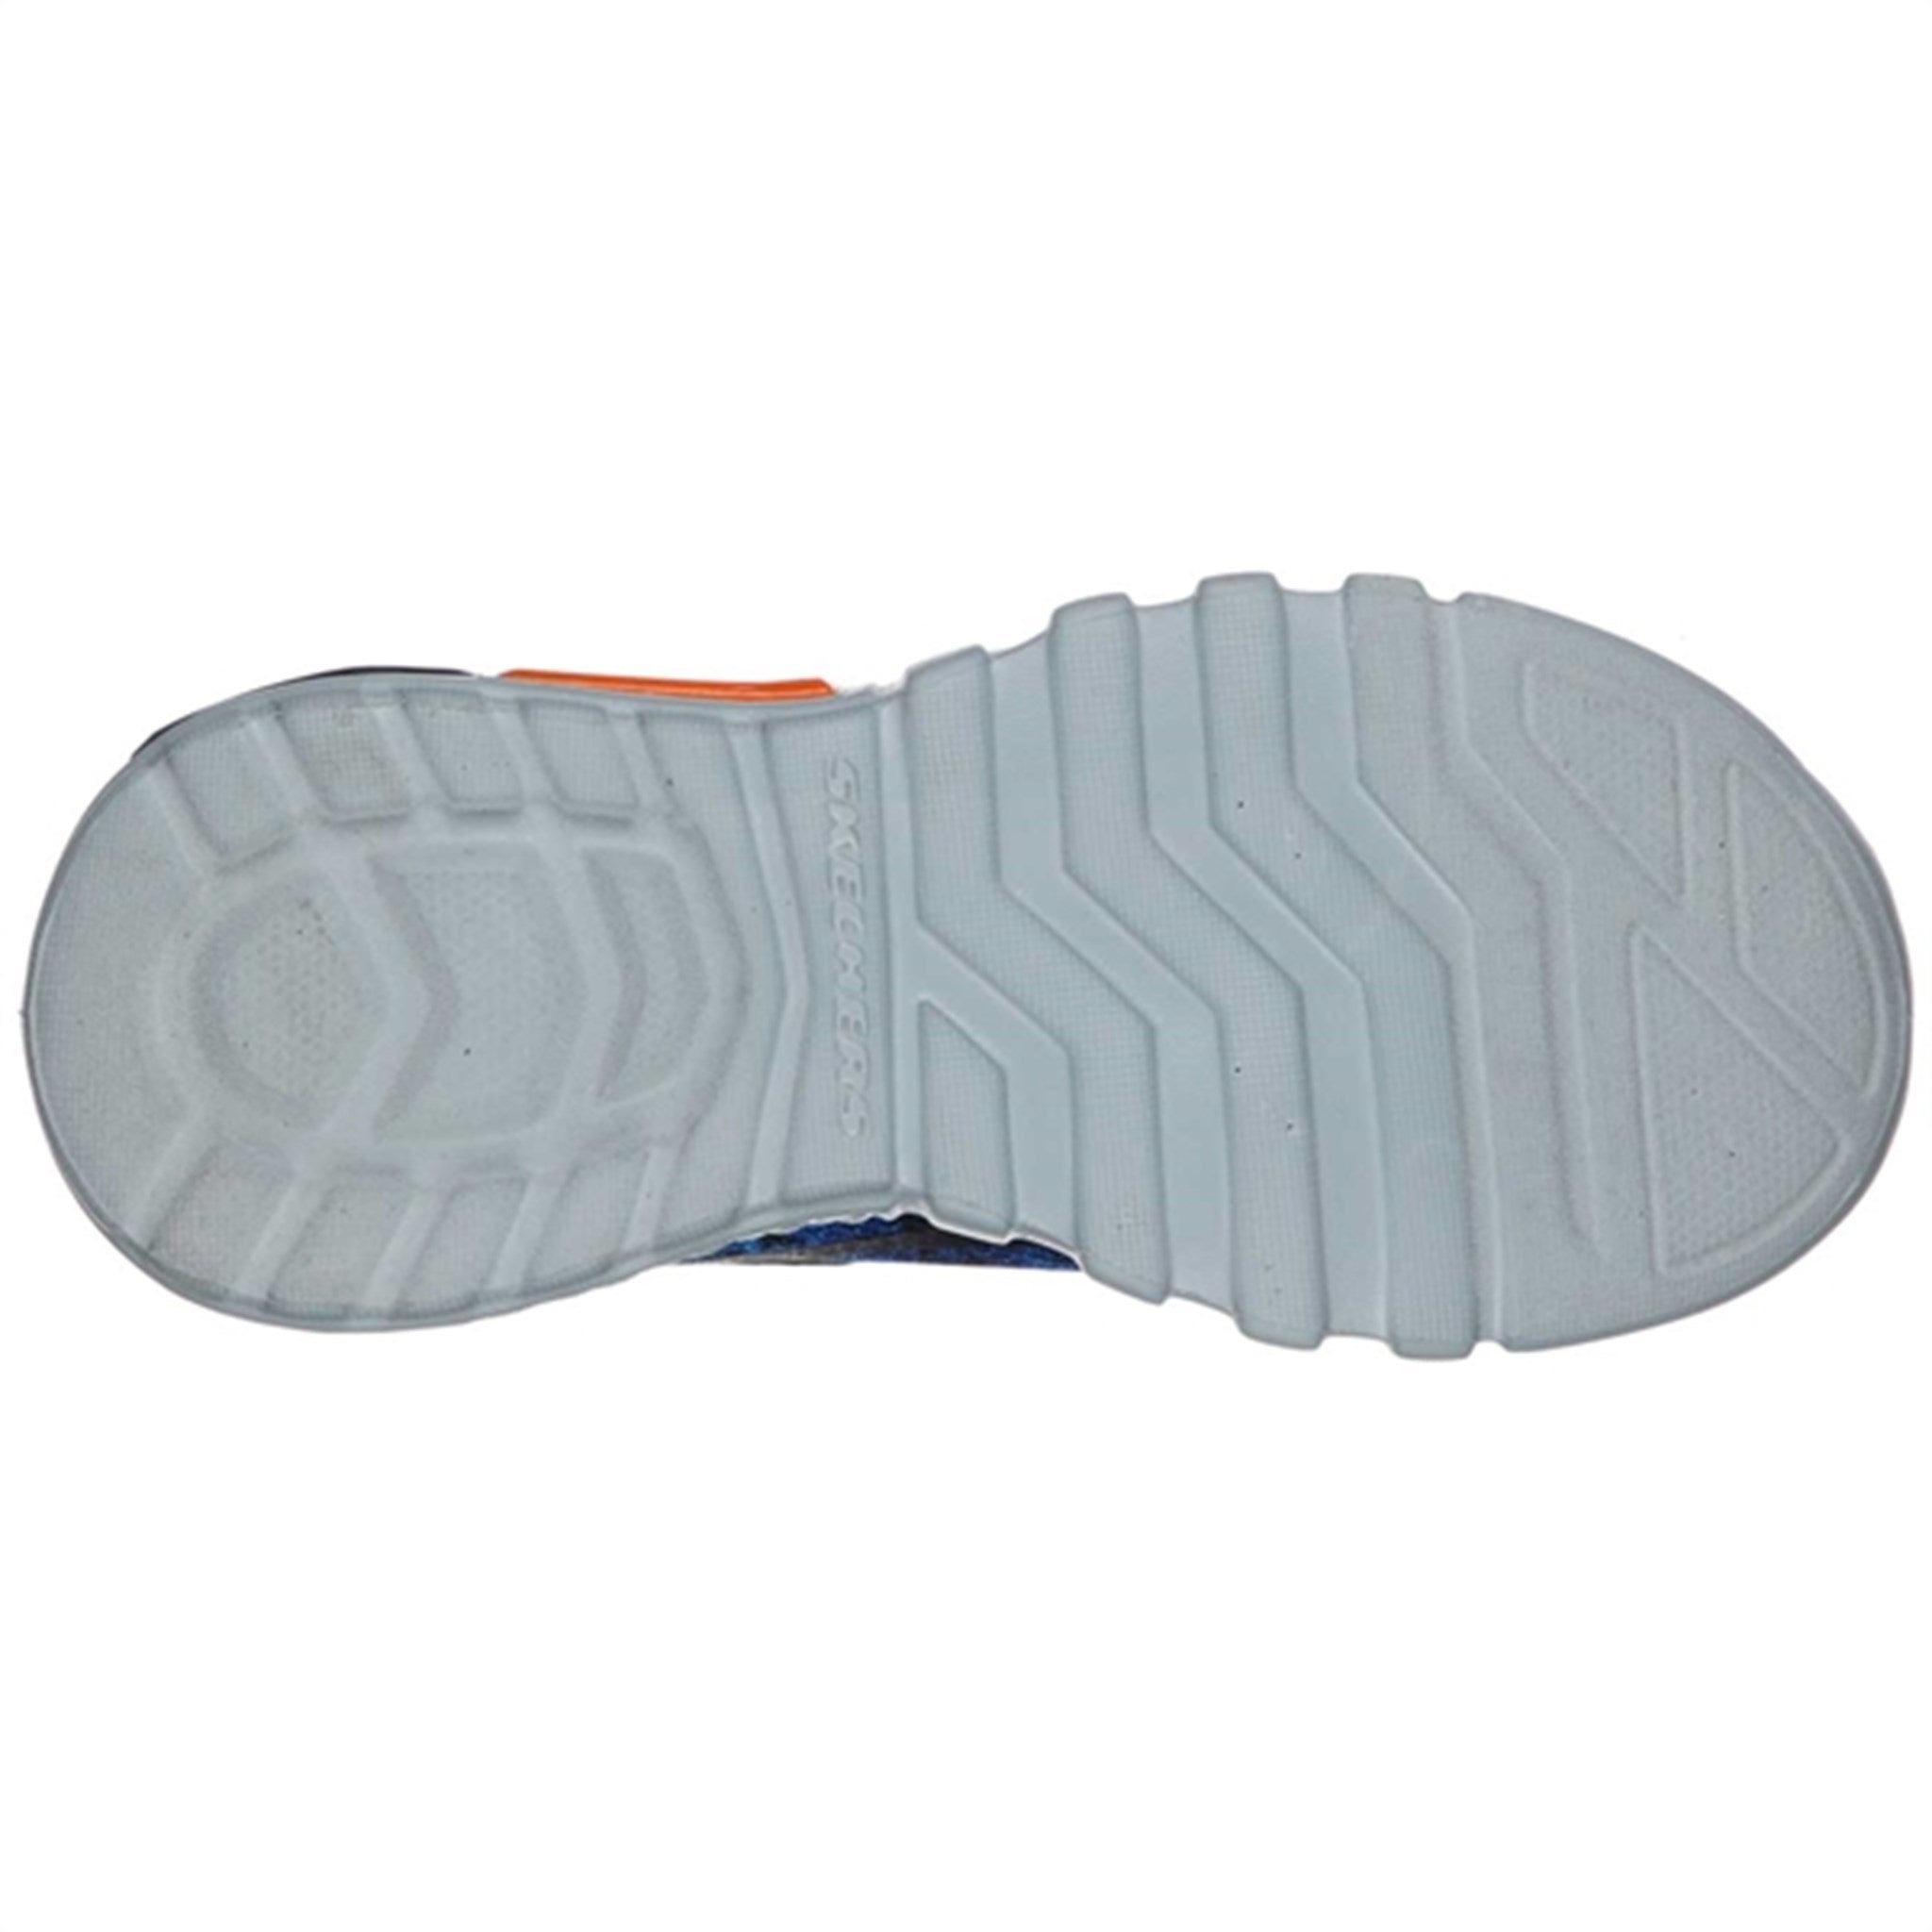 Skechers S-Lights Flex Glow Sneakers Rondler Navy/Orange 4